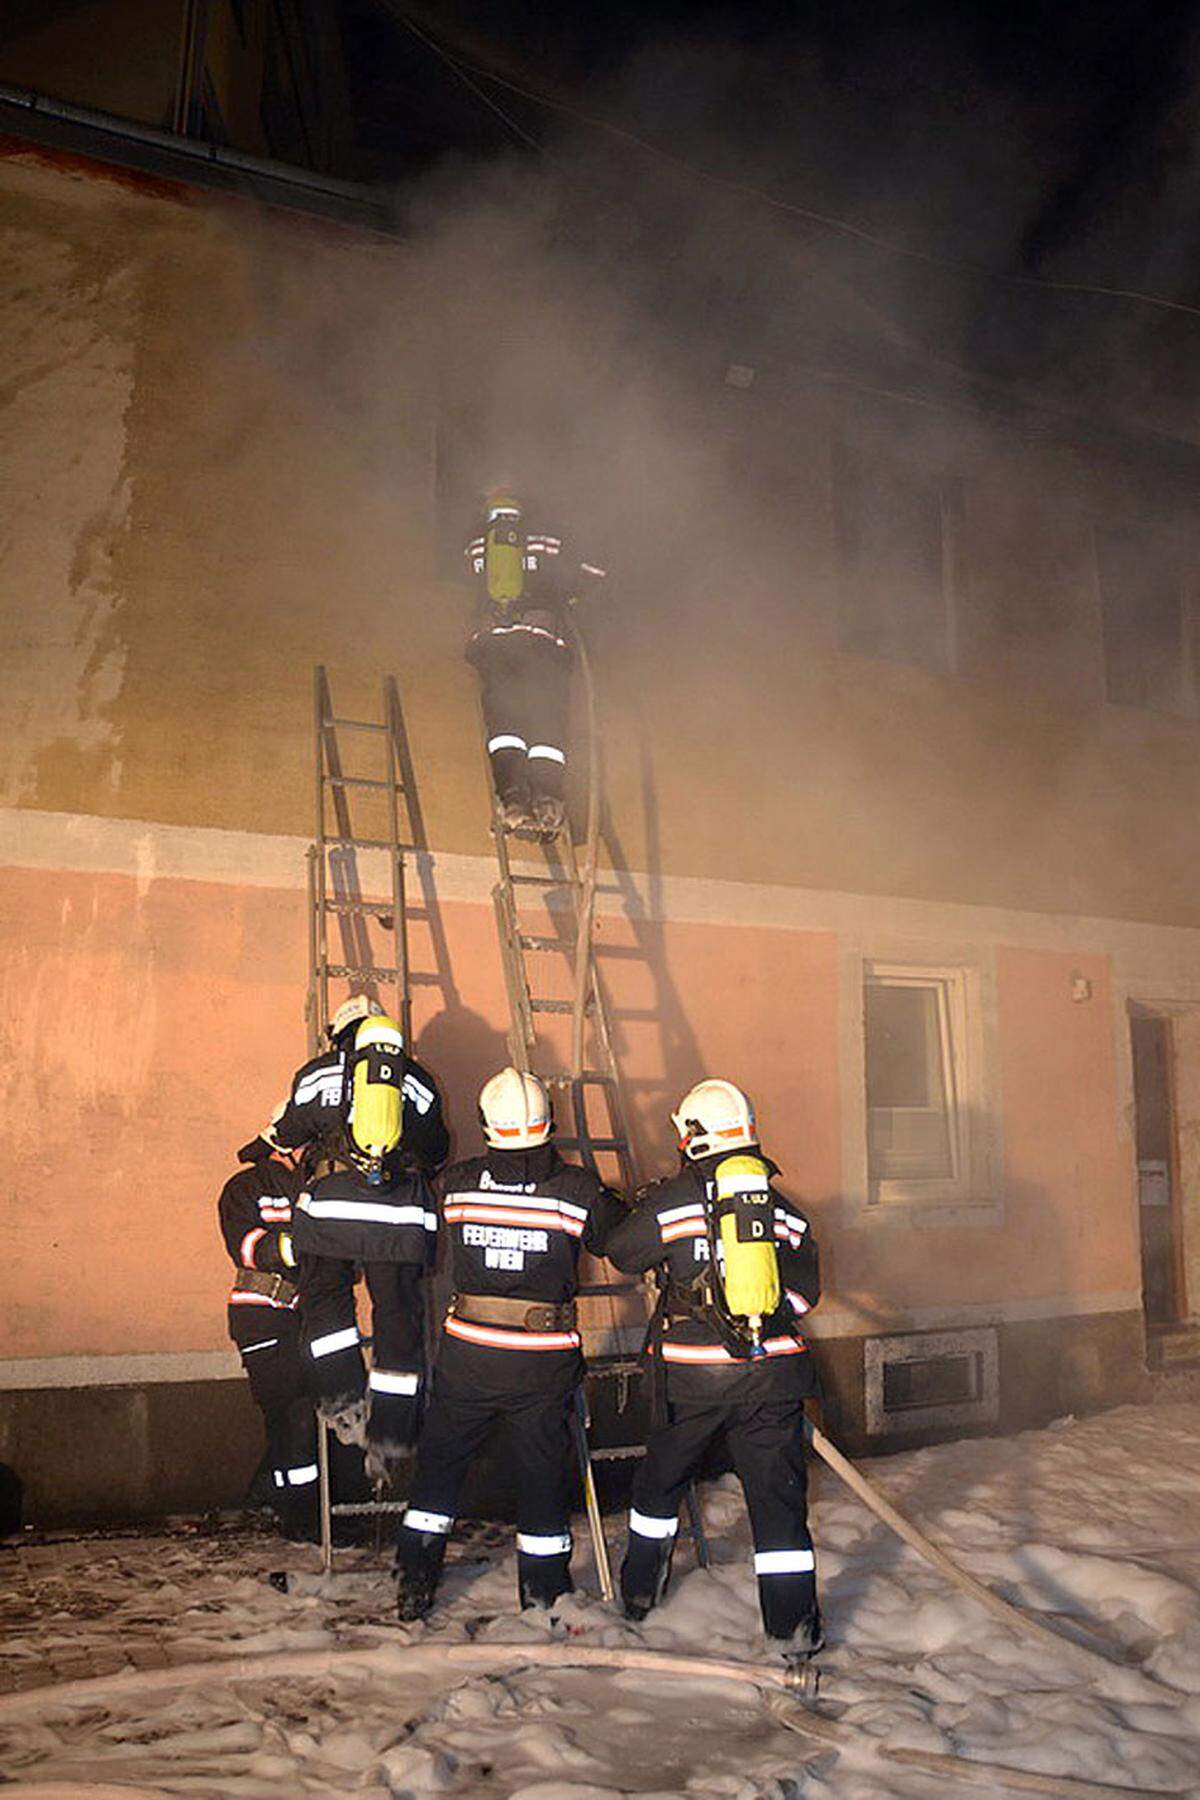 4. September.  Der Brand eines Hauses in der Leopoldstadt hat einen Großeinsatz der Feuerwehr ausgelöst. Der Trakt im Innenhof eines zweigeschoßigen Gebäudes stand in Flammen. "Gut 100 Mann waren im Einsatz", sagte ein Sprecher der Feuerwehr. Eine Person erlitt leichte Rauchgasvergiftung.